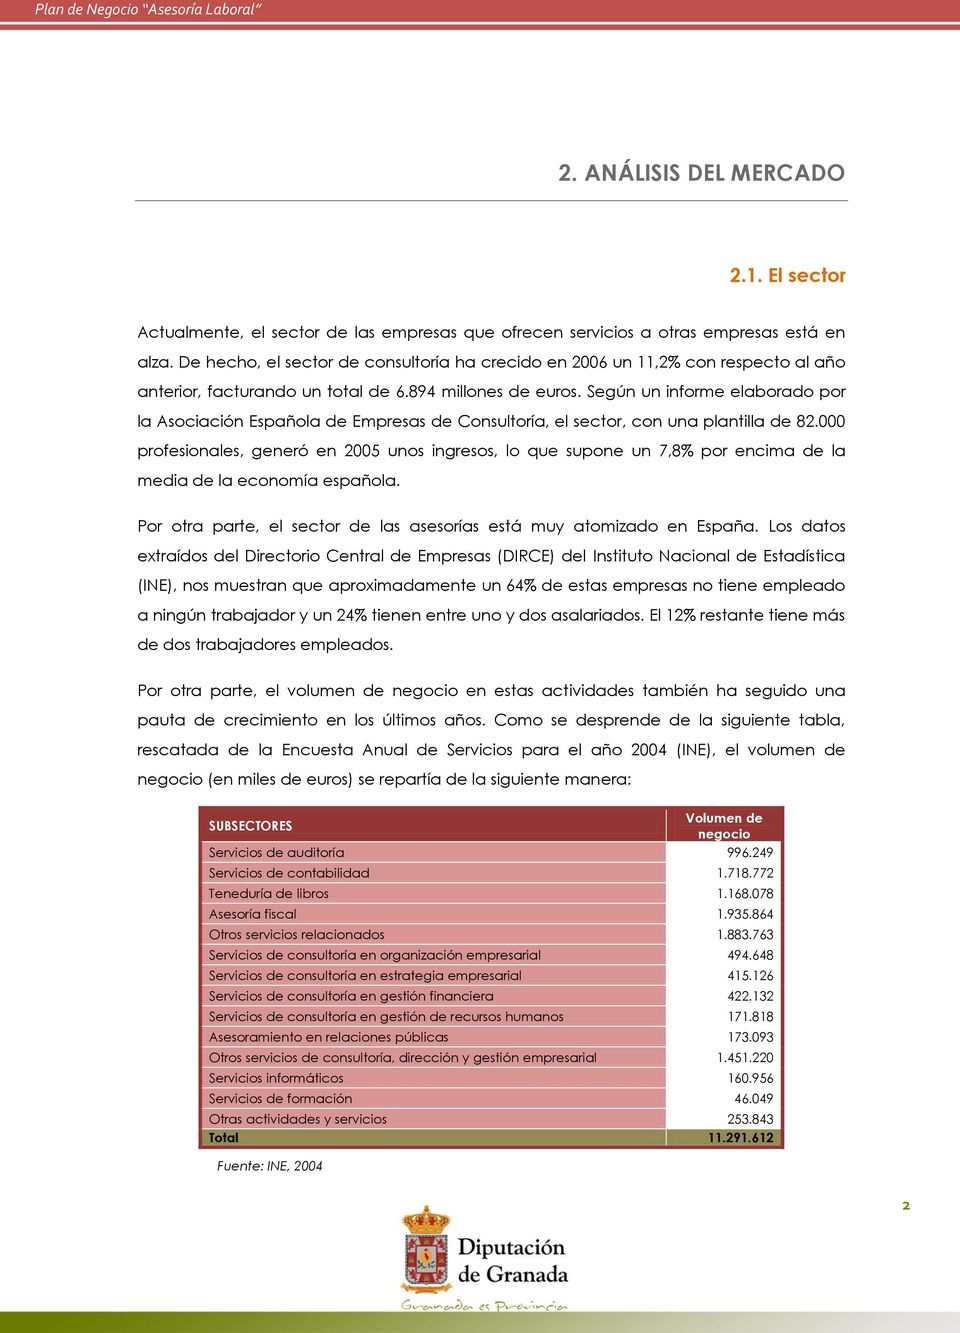 Según un informe elaborado por la Asociación Española de Empresas de Consultoría, el sector, con una plantilla de 82.